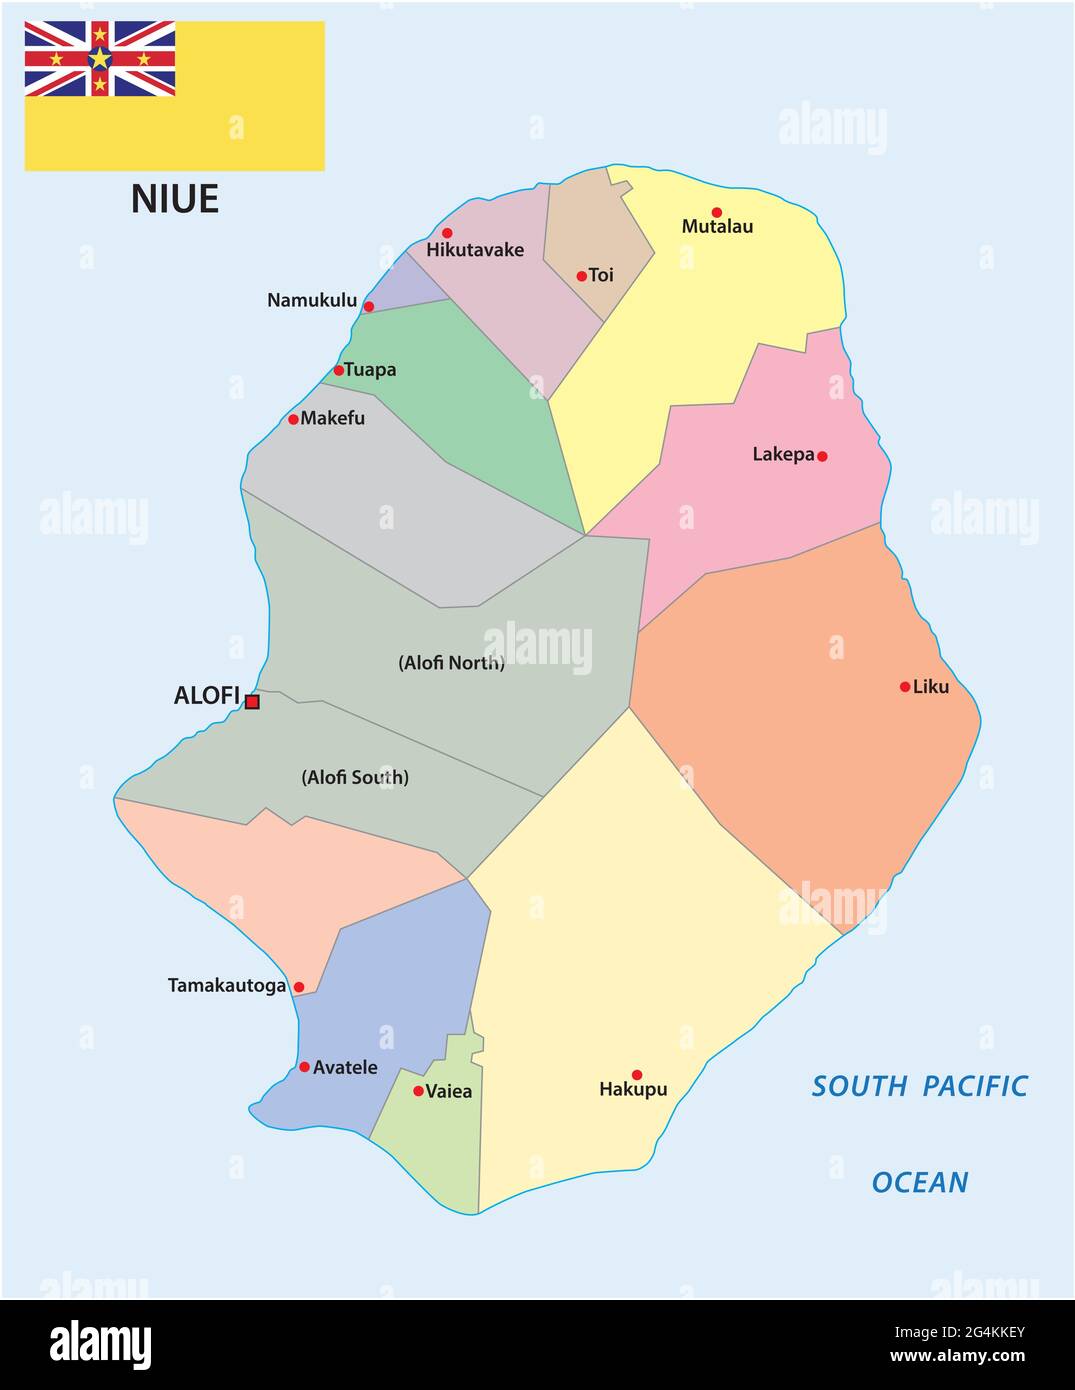 Carte administrative vectorielle de l'île Nioué dans le Pacifique Sud Illustration de Vecteur